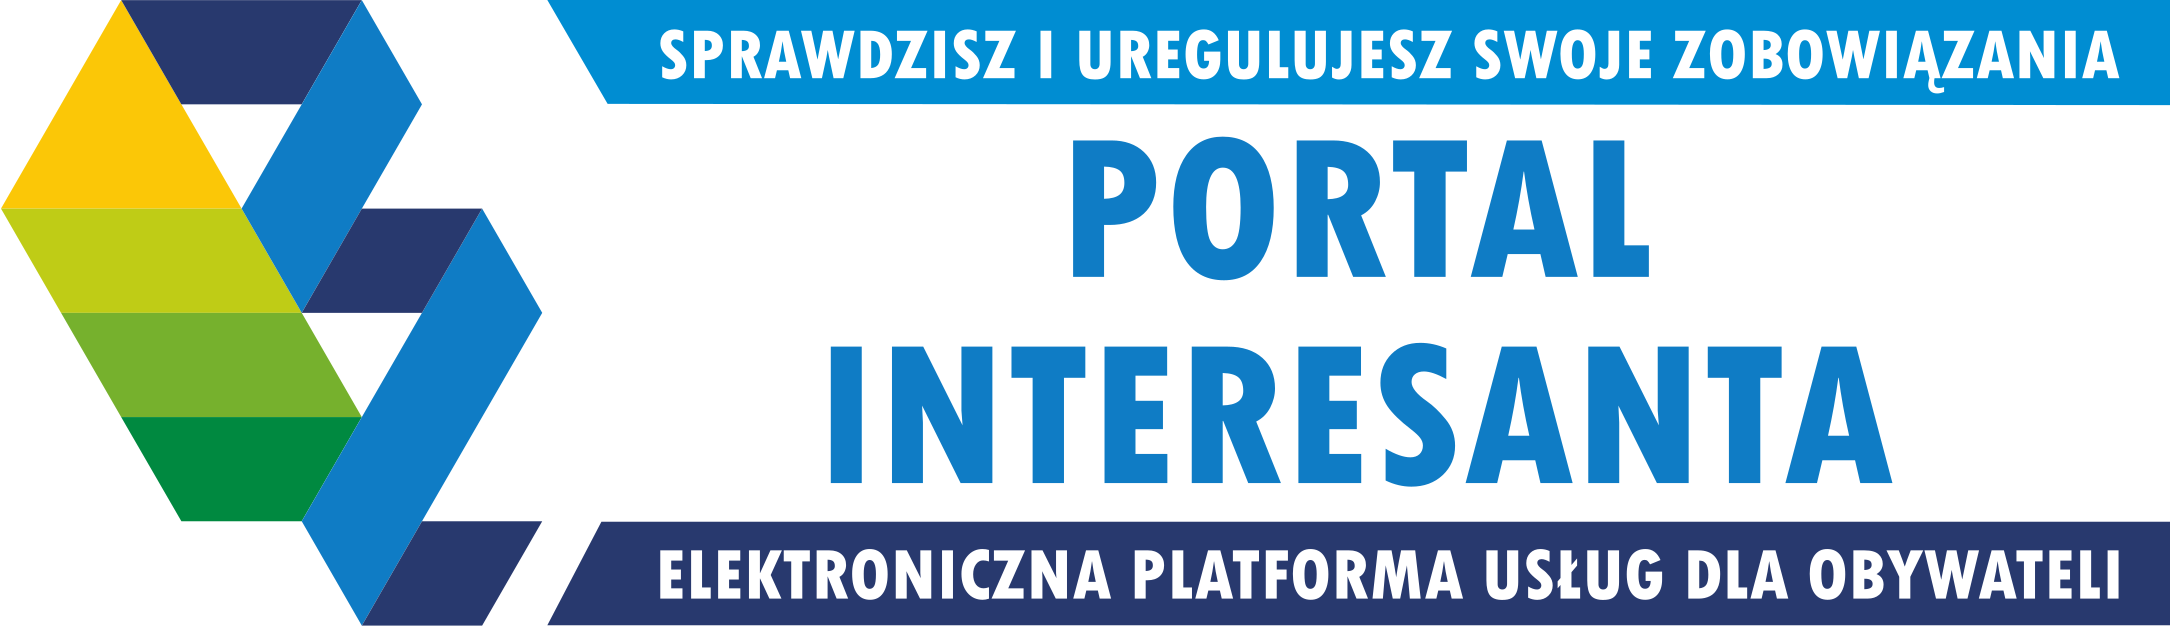 Portal Interesanta. Sprawdzisz i uregulujesz swoje zobowiązania. Elektroniczna Platforma Usług dla Obywateli.